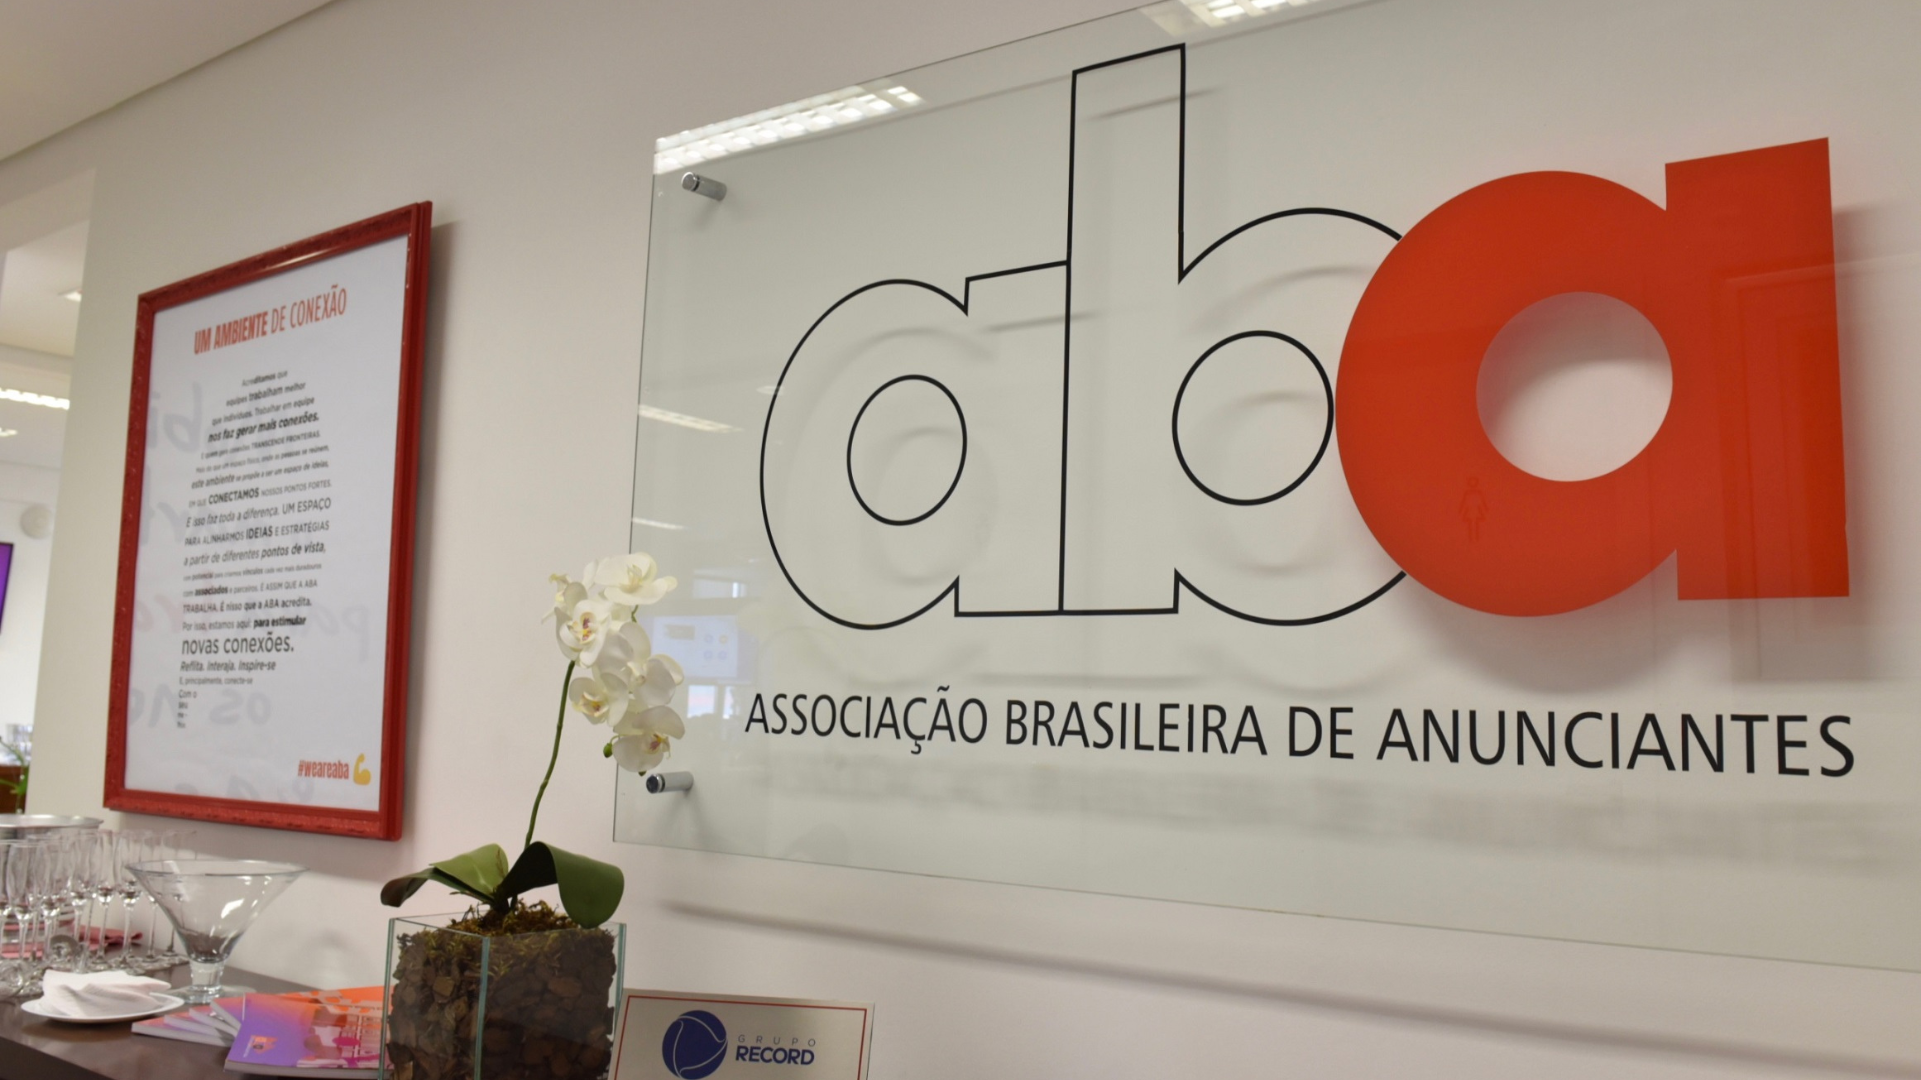 Sede da ABA, a Associação Brasileira de Anunciantes, um dos termos de mídia desse glossário.